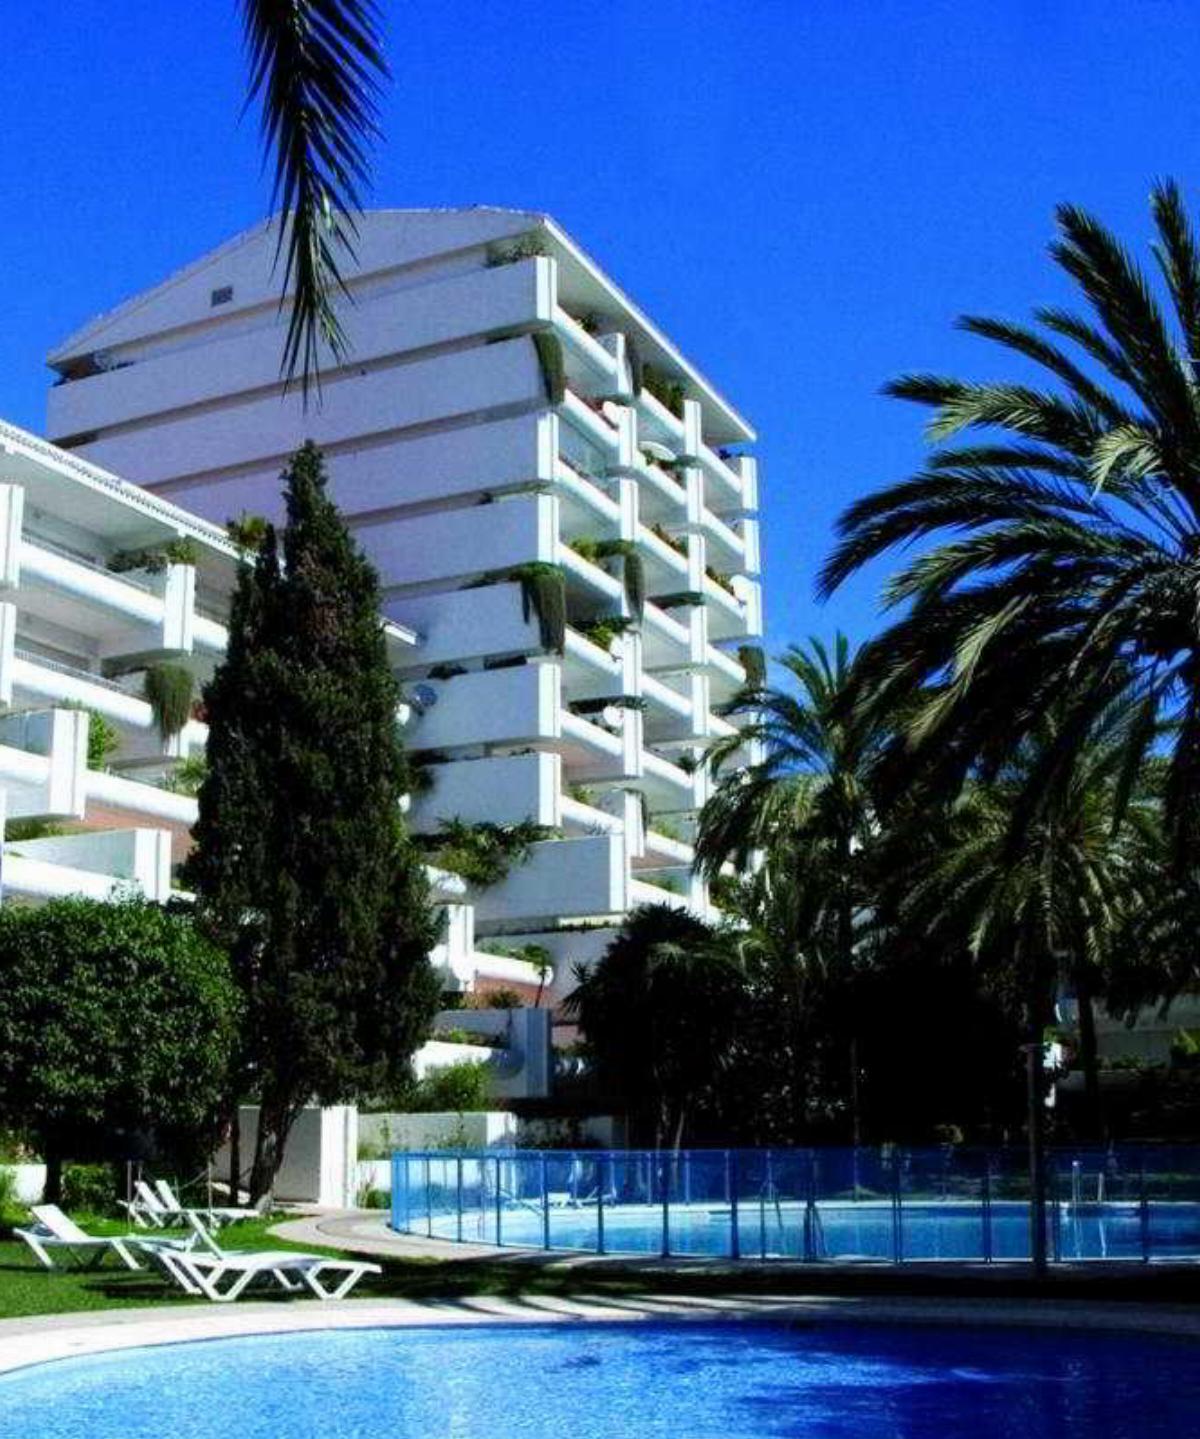 Jardines Del Mar Hotel Costa Del Sol Spain